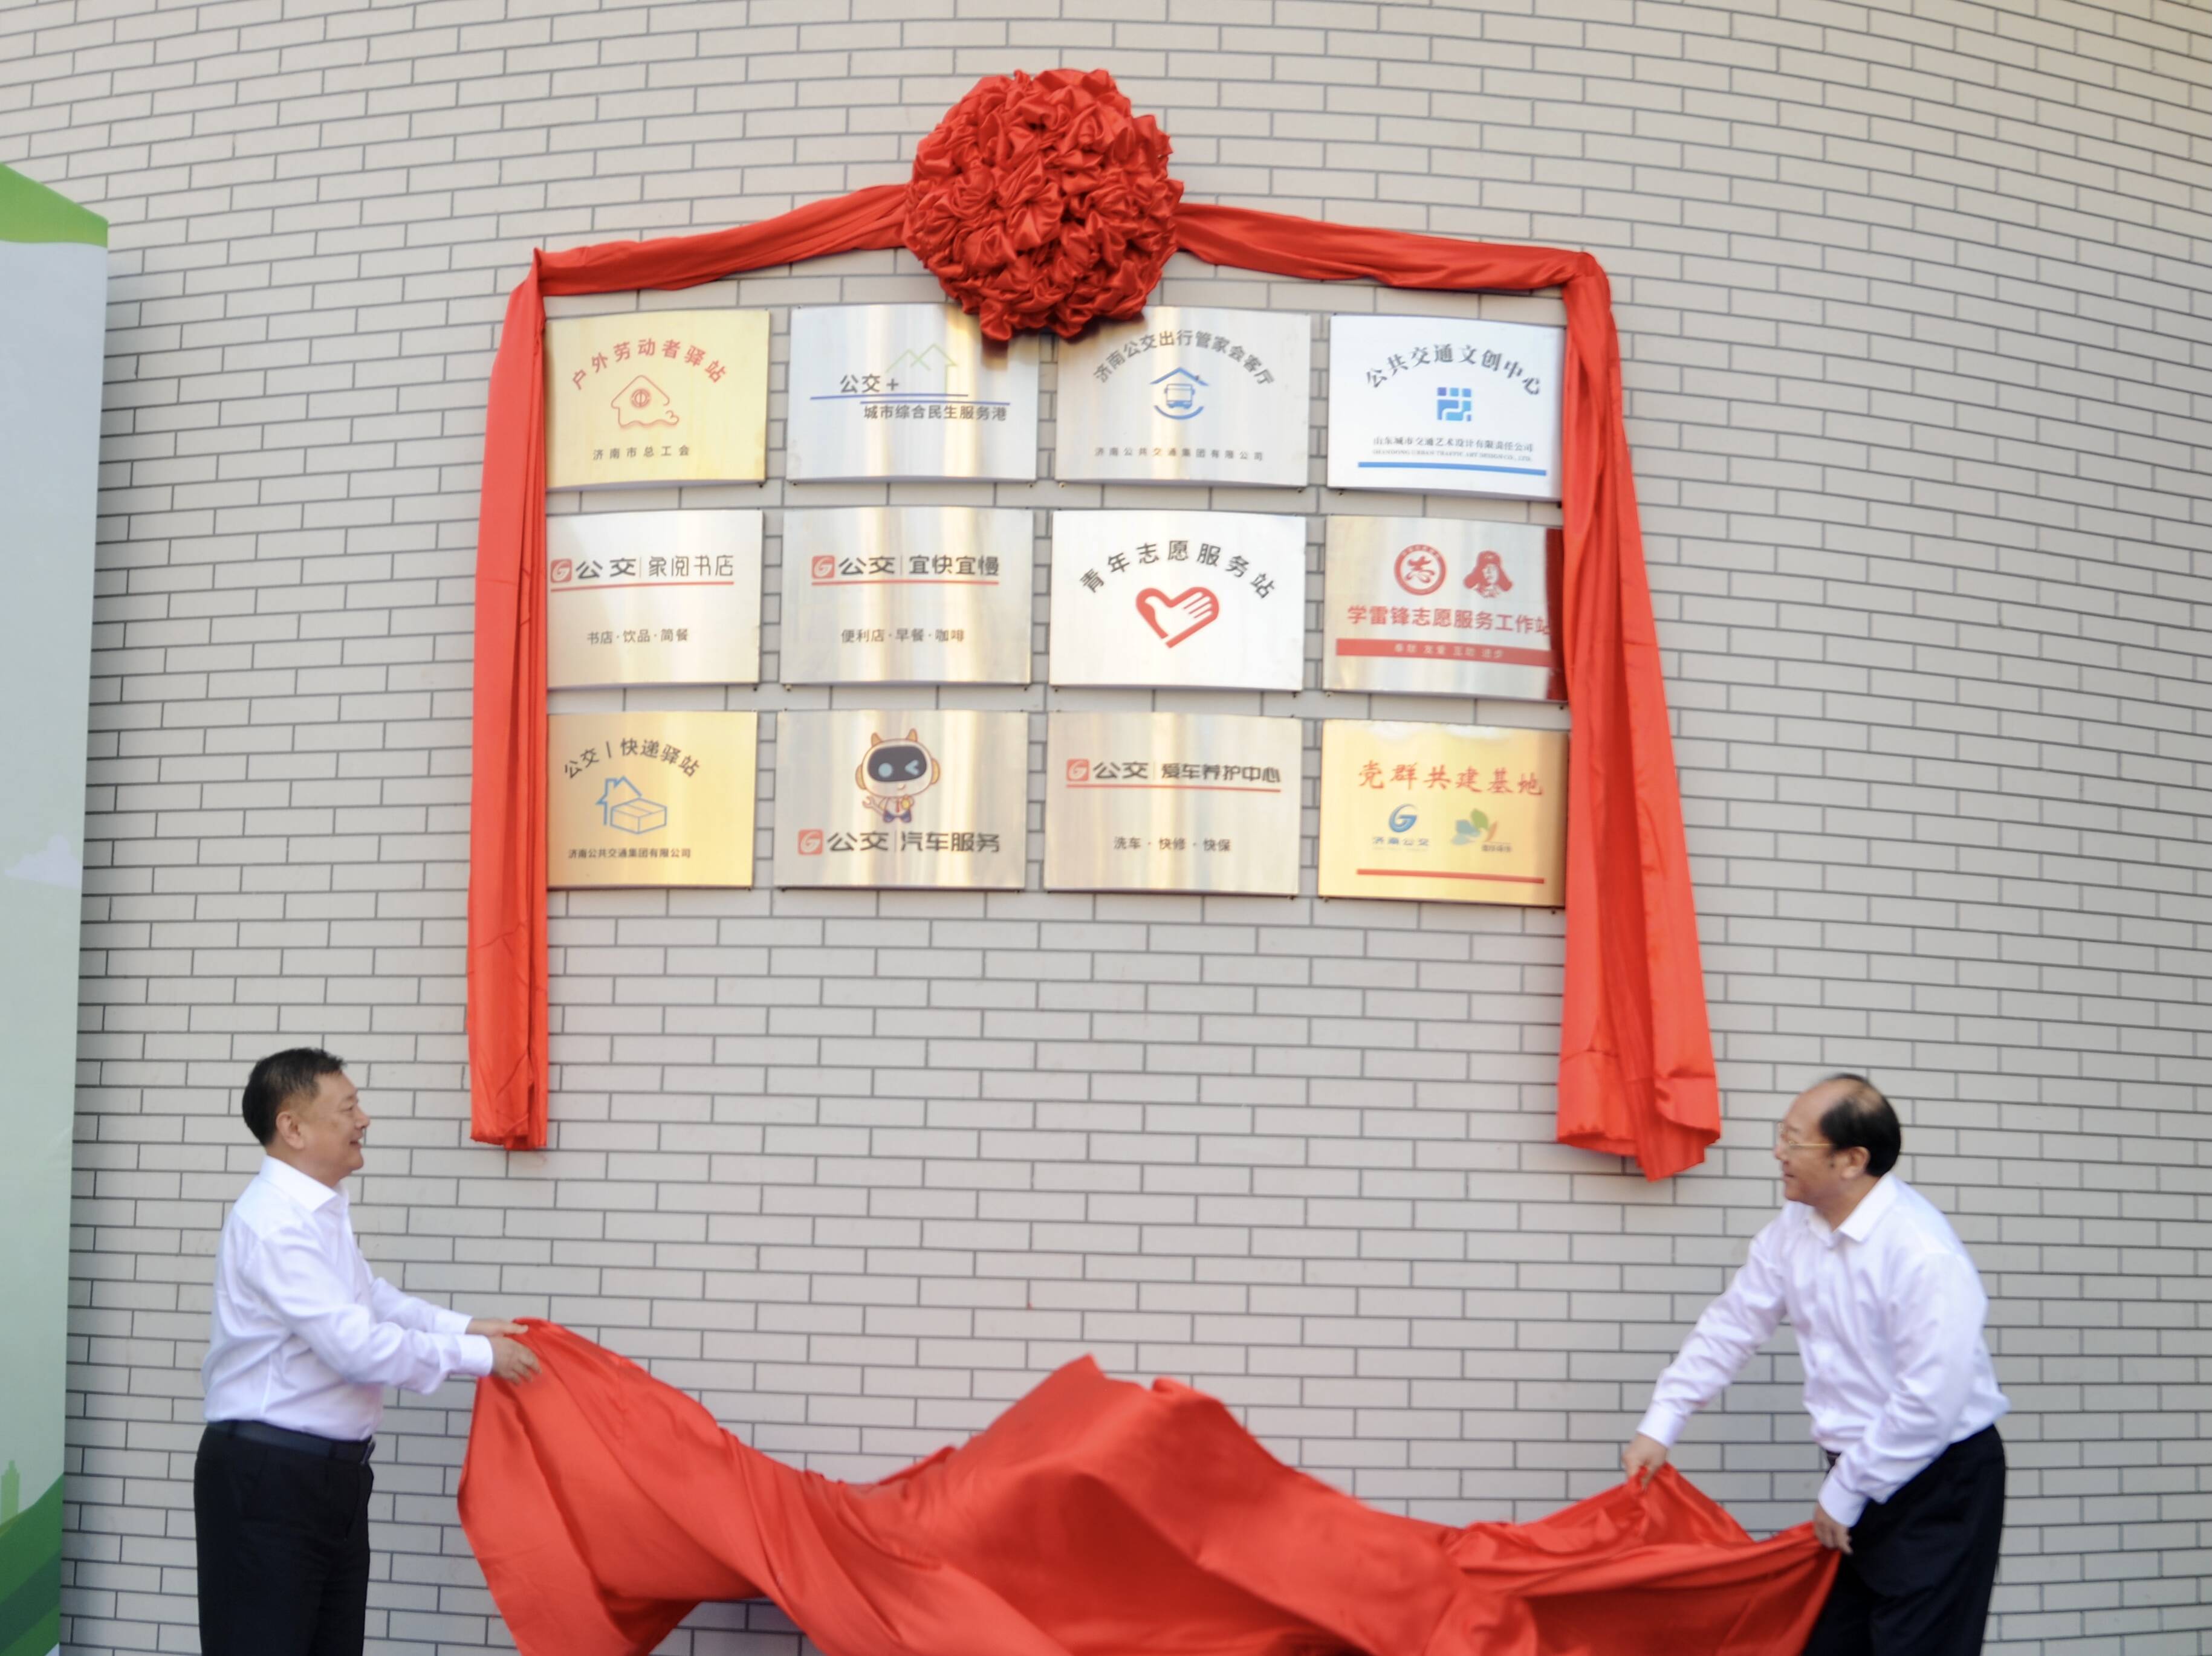 打造“公交+生活” 新式公交场站在济南启用